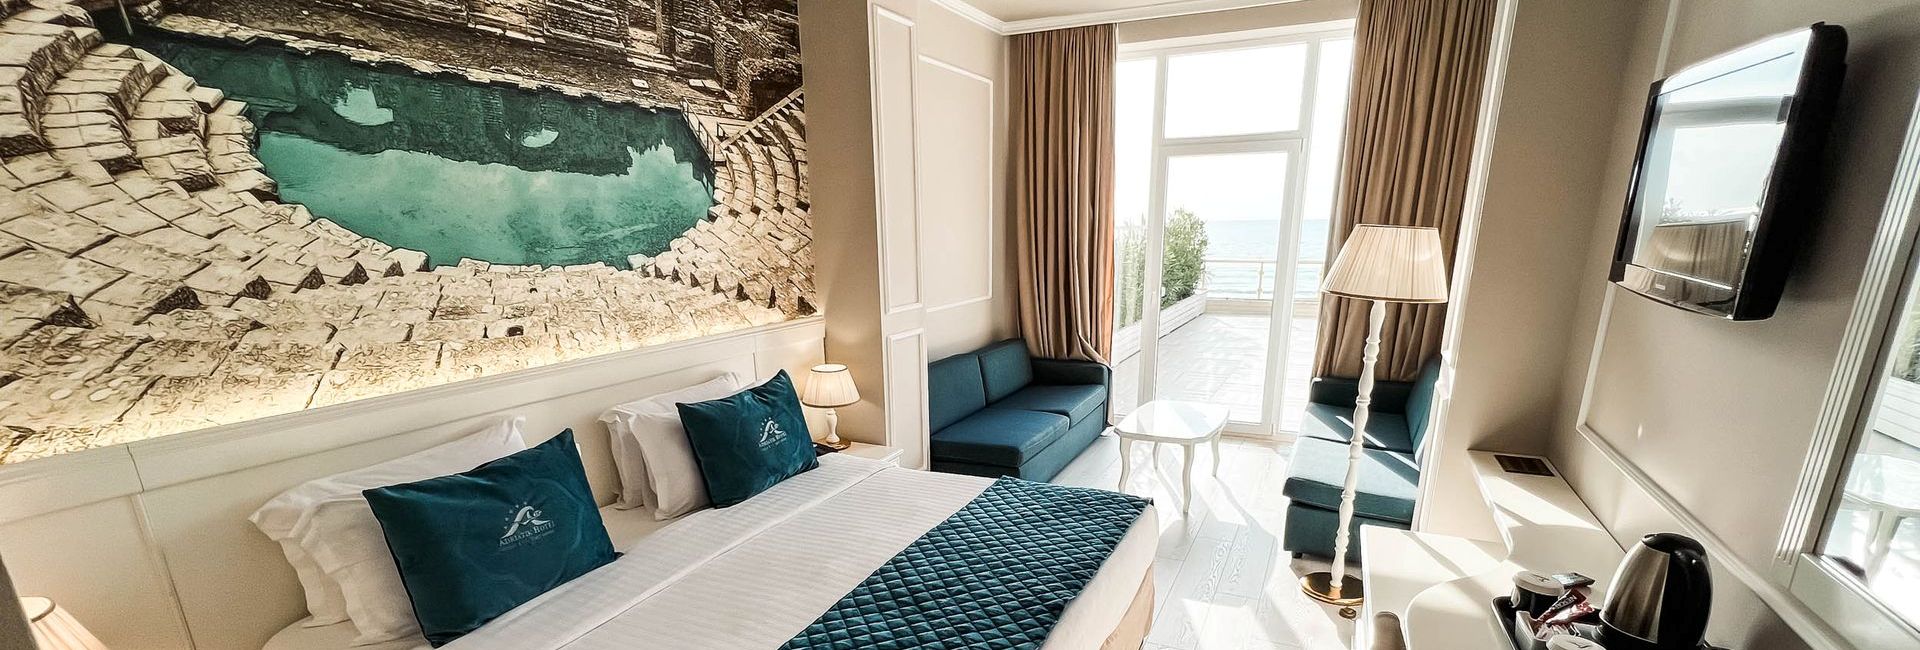 Room at luxury Adriatik Hotel in Durres, Albania